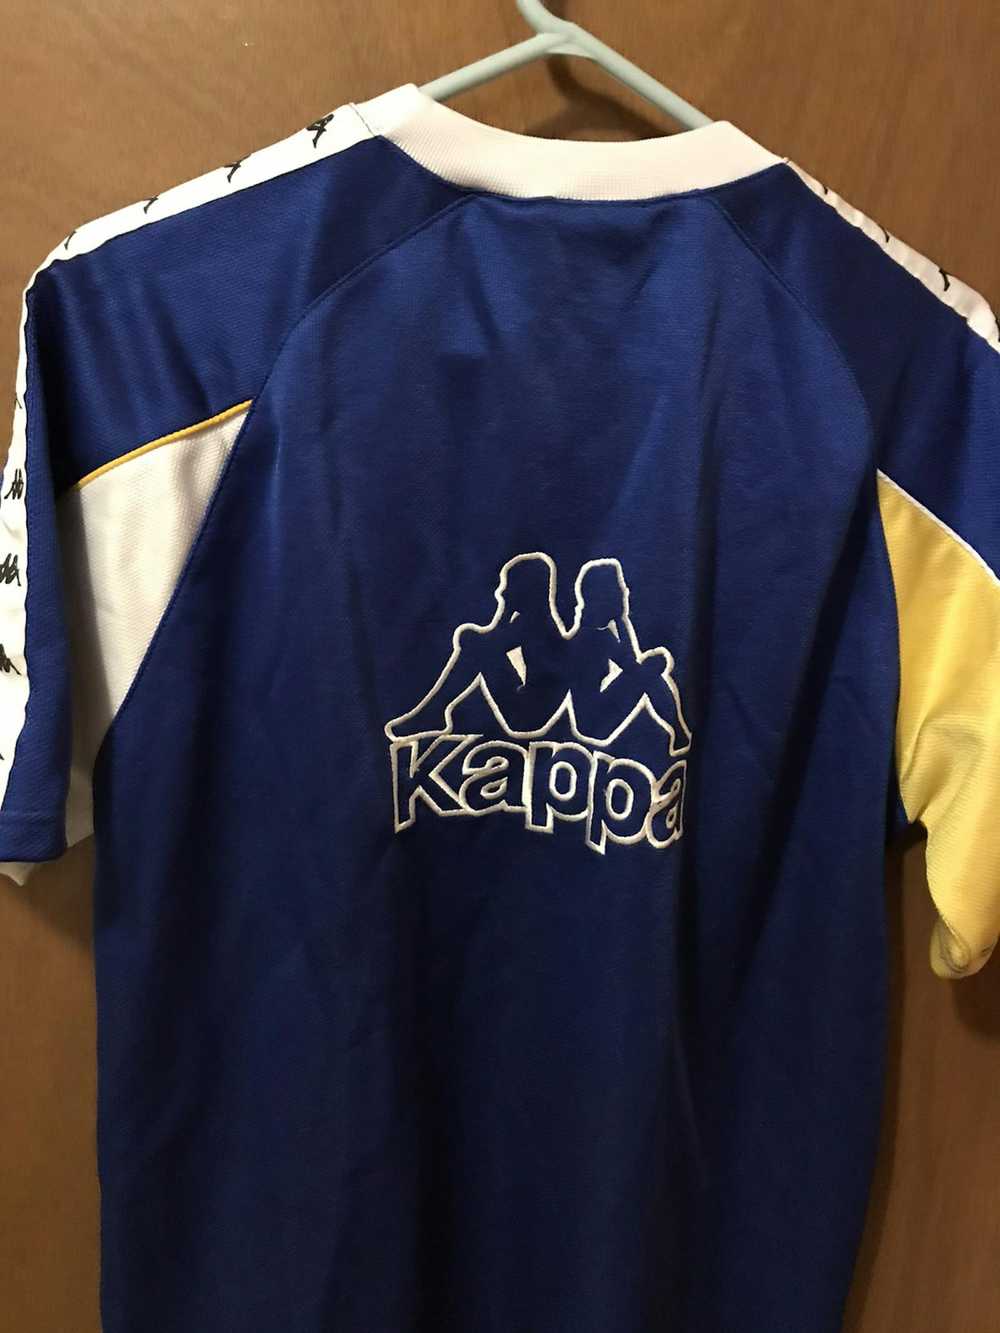 Kappa KAPPA JERSEY Big Logo sport shirt - image 5